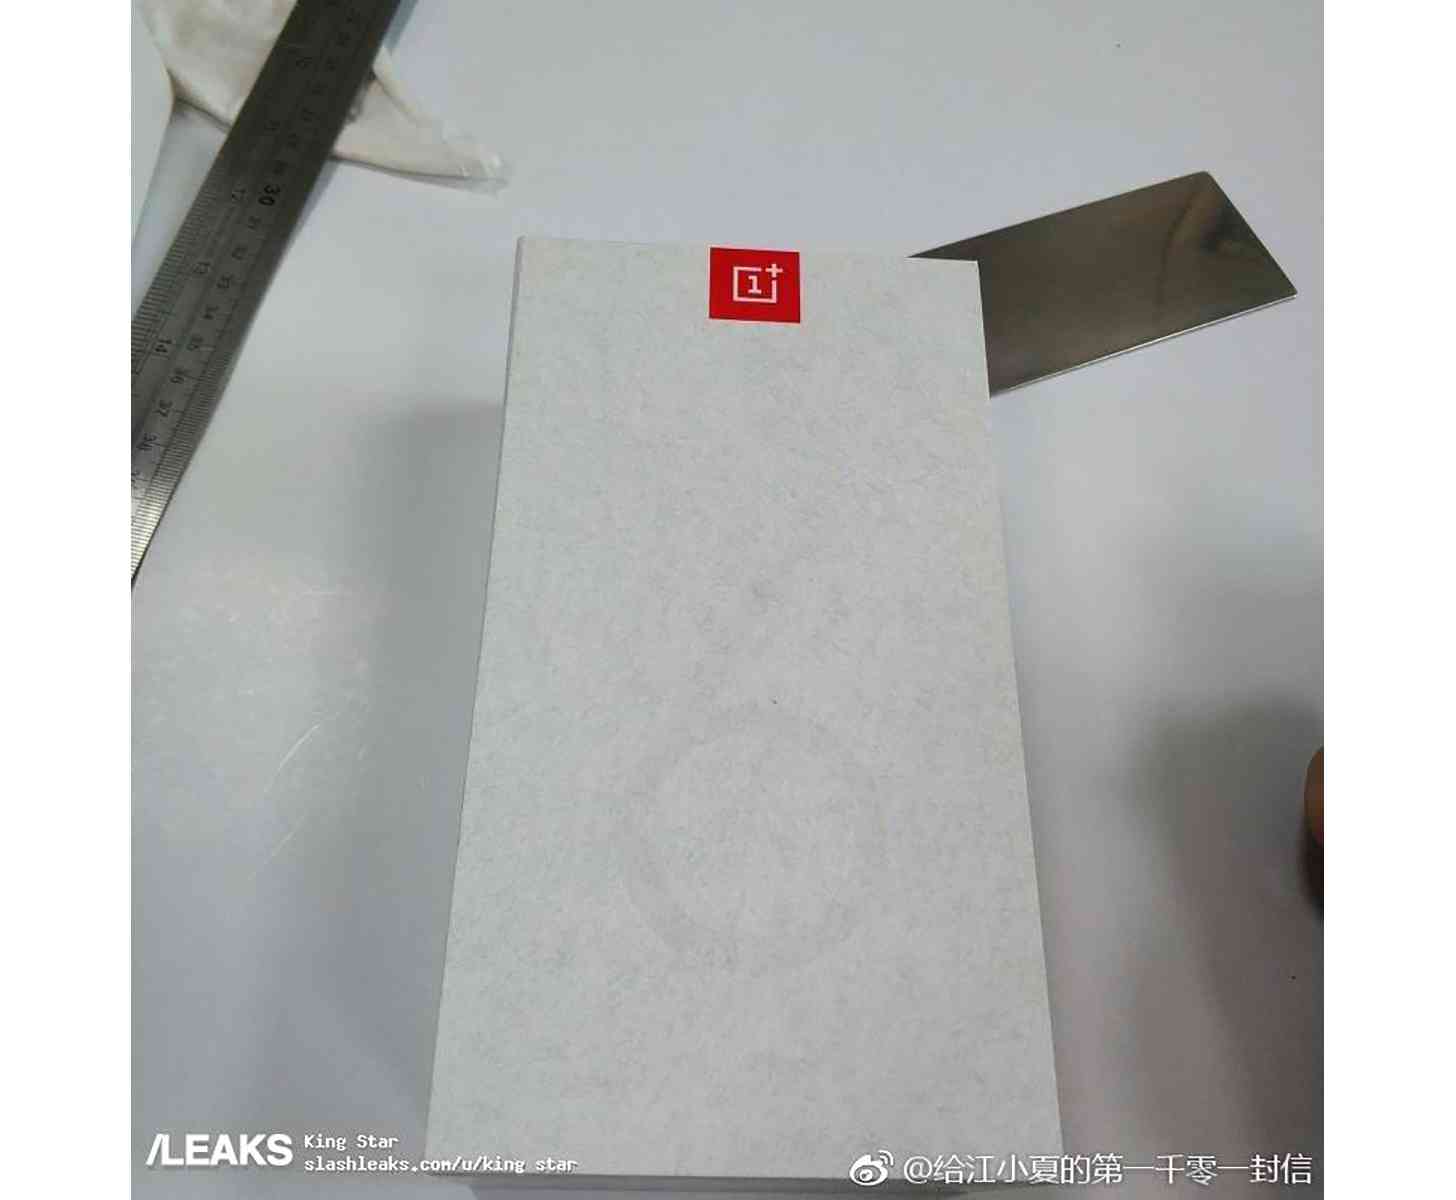 OnePlus 6T packaging leak 2